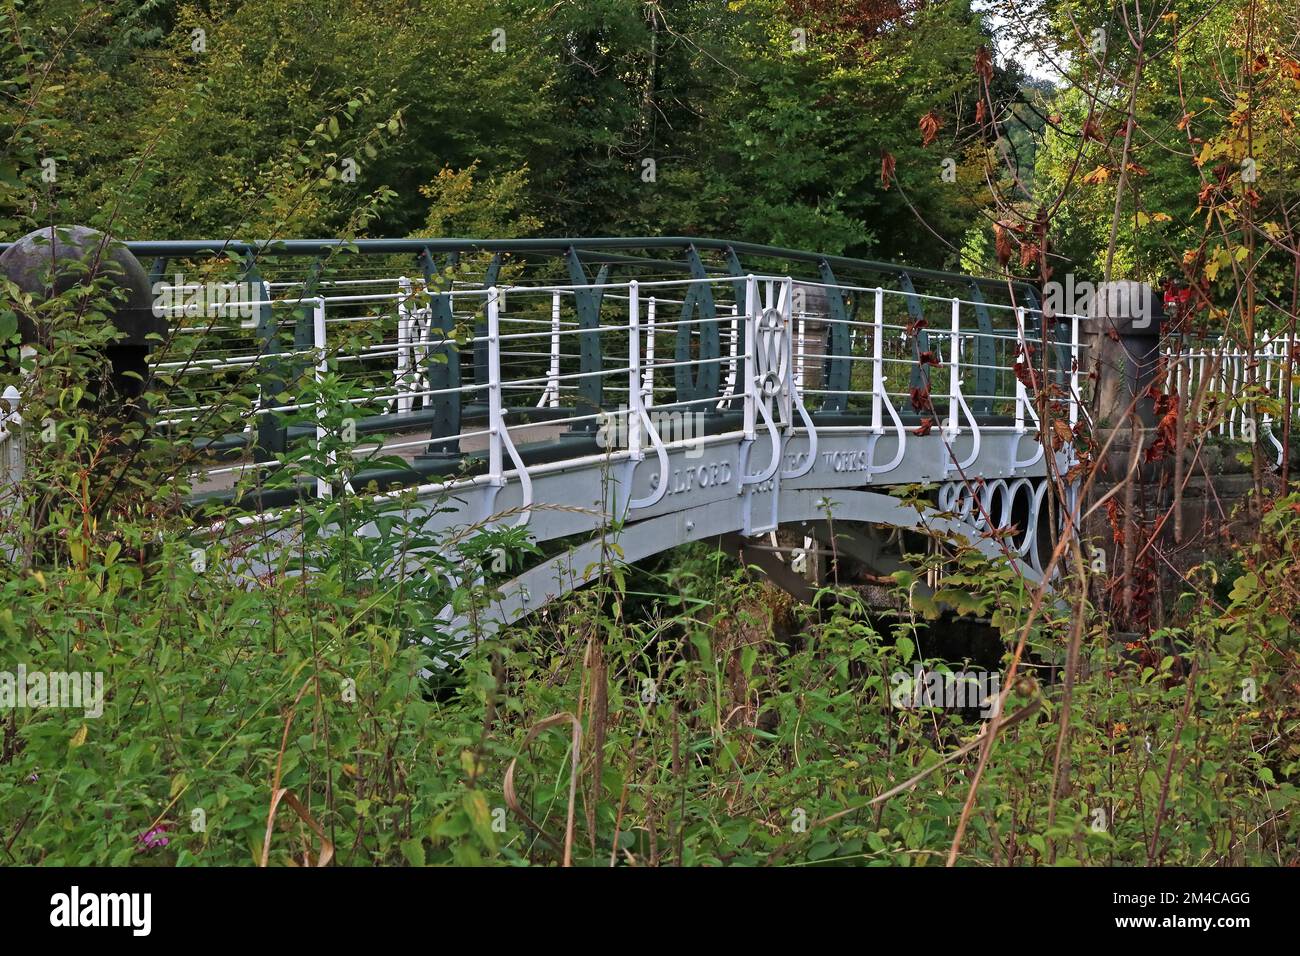 Iron Bridge 1813, über den Fluss Goyt, in Brabyns Park, Marple, Stockport, Cheshire, England, Großbritannien, SK6 5DT Stockfoto